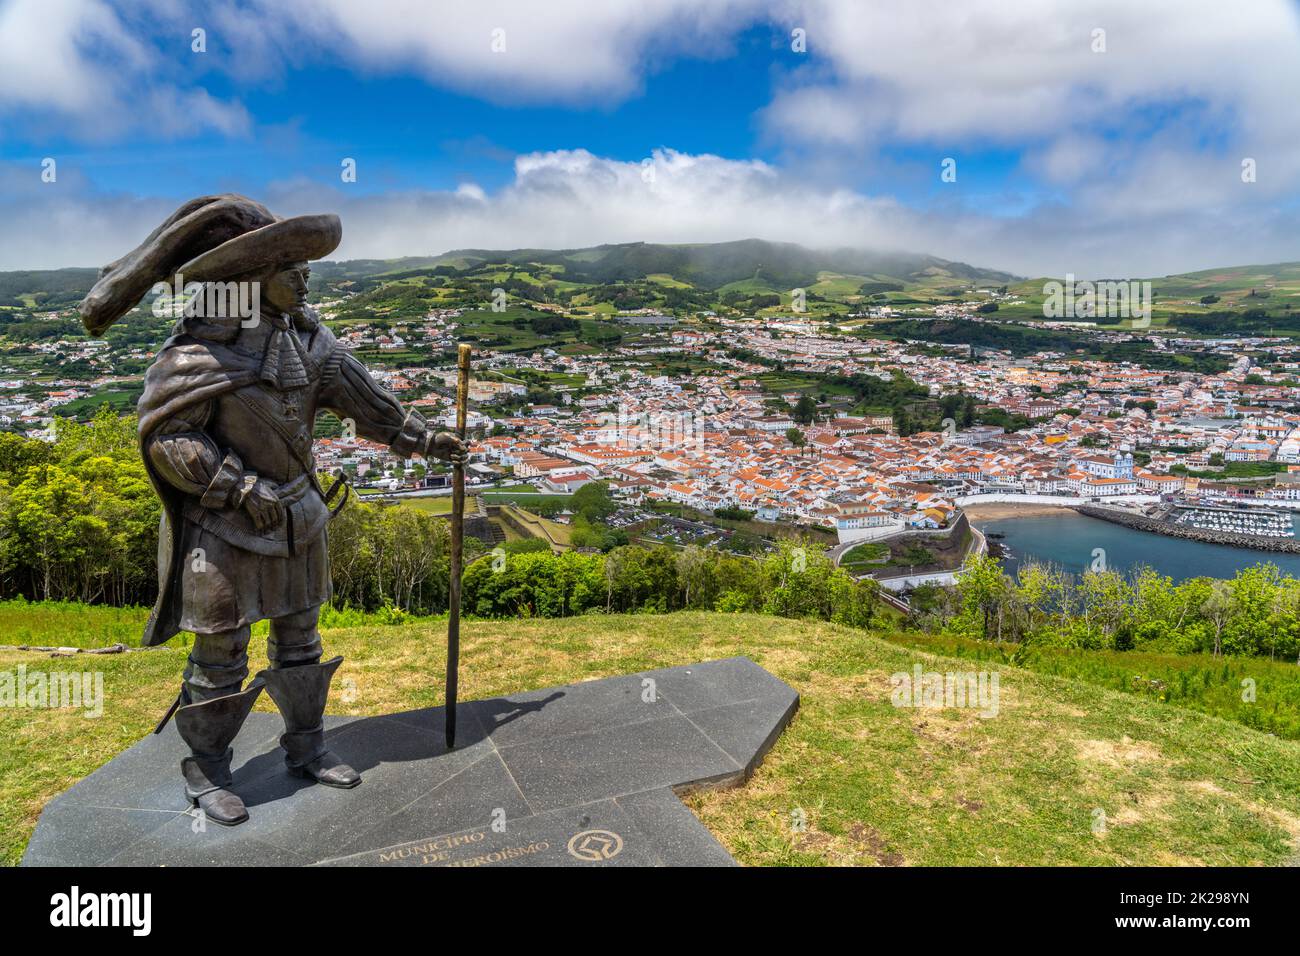 Statue de Afonso VI deuxième roi du Portugal sur Monte Brasil avec une vue sur le centre historique de la ville, plage publique appelée Praia de Angra do Heroismo ci-dessous, à Angra do Heroismo, île de Terceira, Açores, Portugal. Banque D'Images